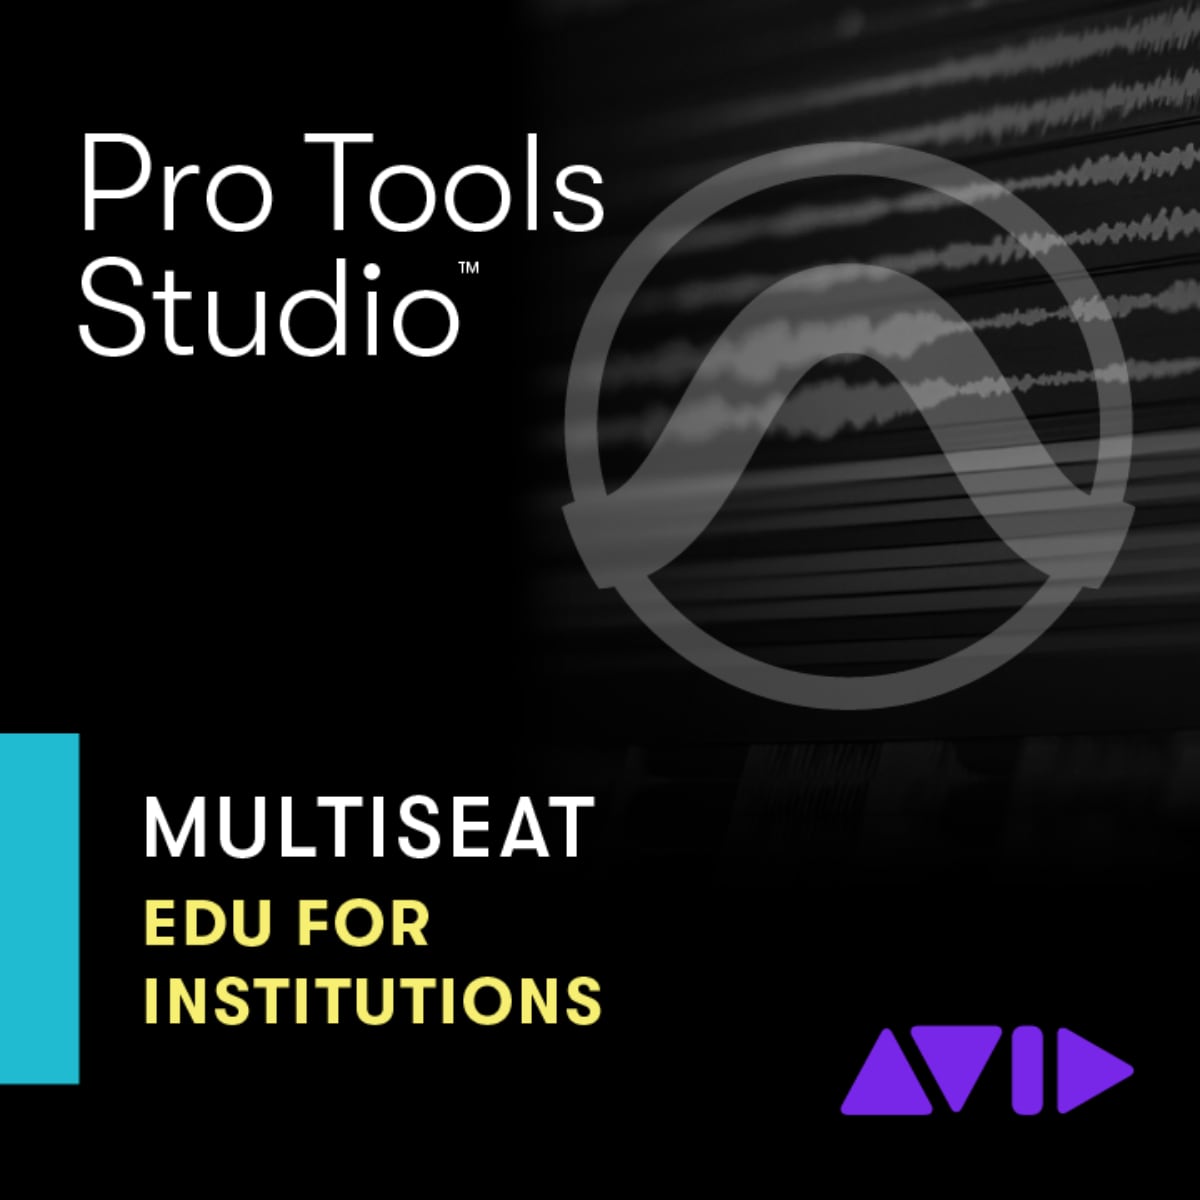 Avid Pro Tools Studio Multiseat License EDU Institution New